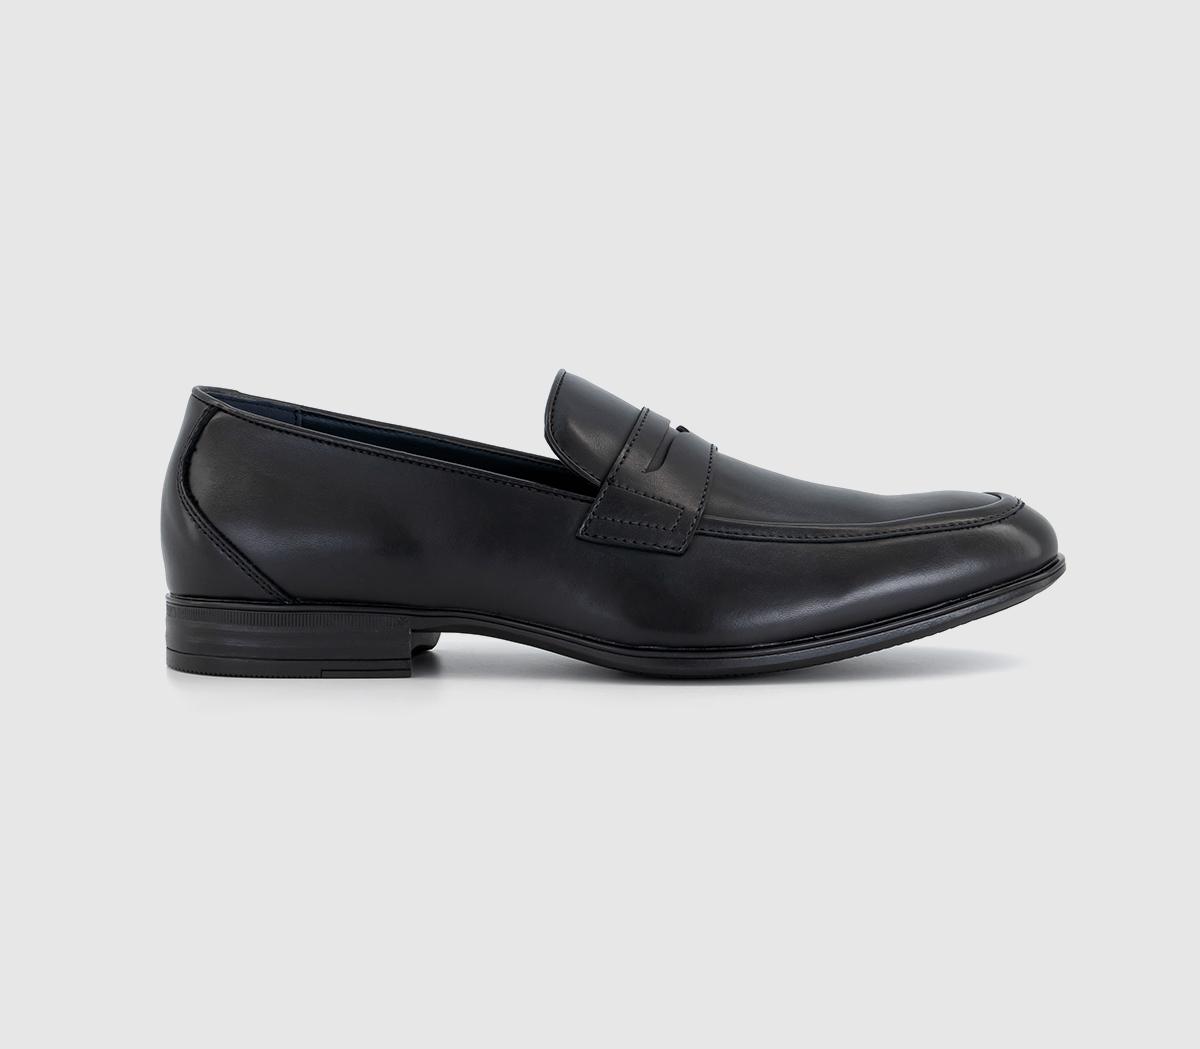 OFFICE Manning Saddle Loafers Black - Men’s Smart Shoes